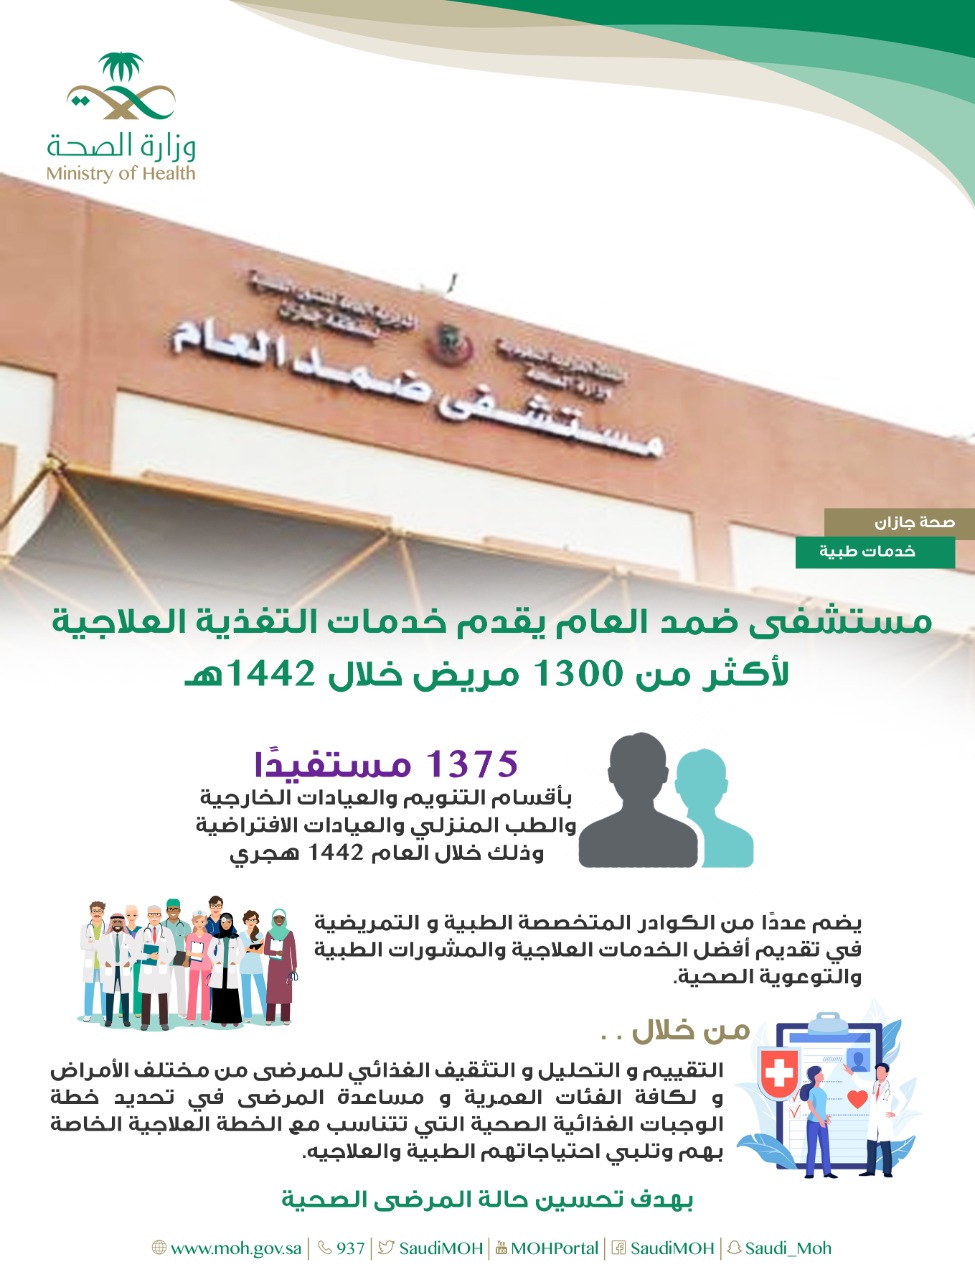 مستشفى ضمد العام يقدم خدمات التغذية العلاجية لأكثر من 1300 مريض خلال 1442 هـ